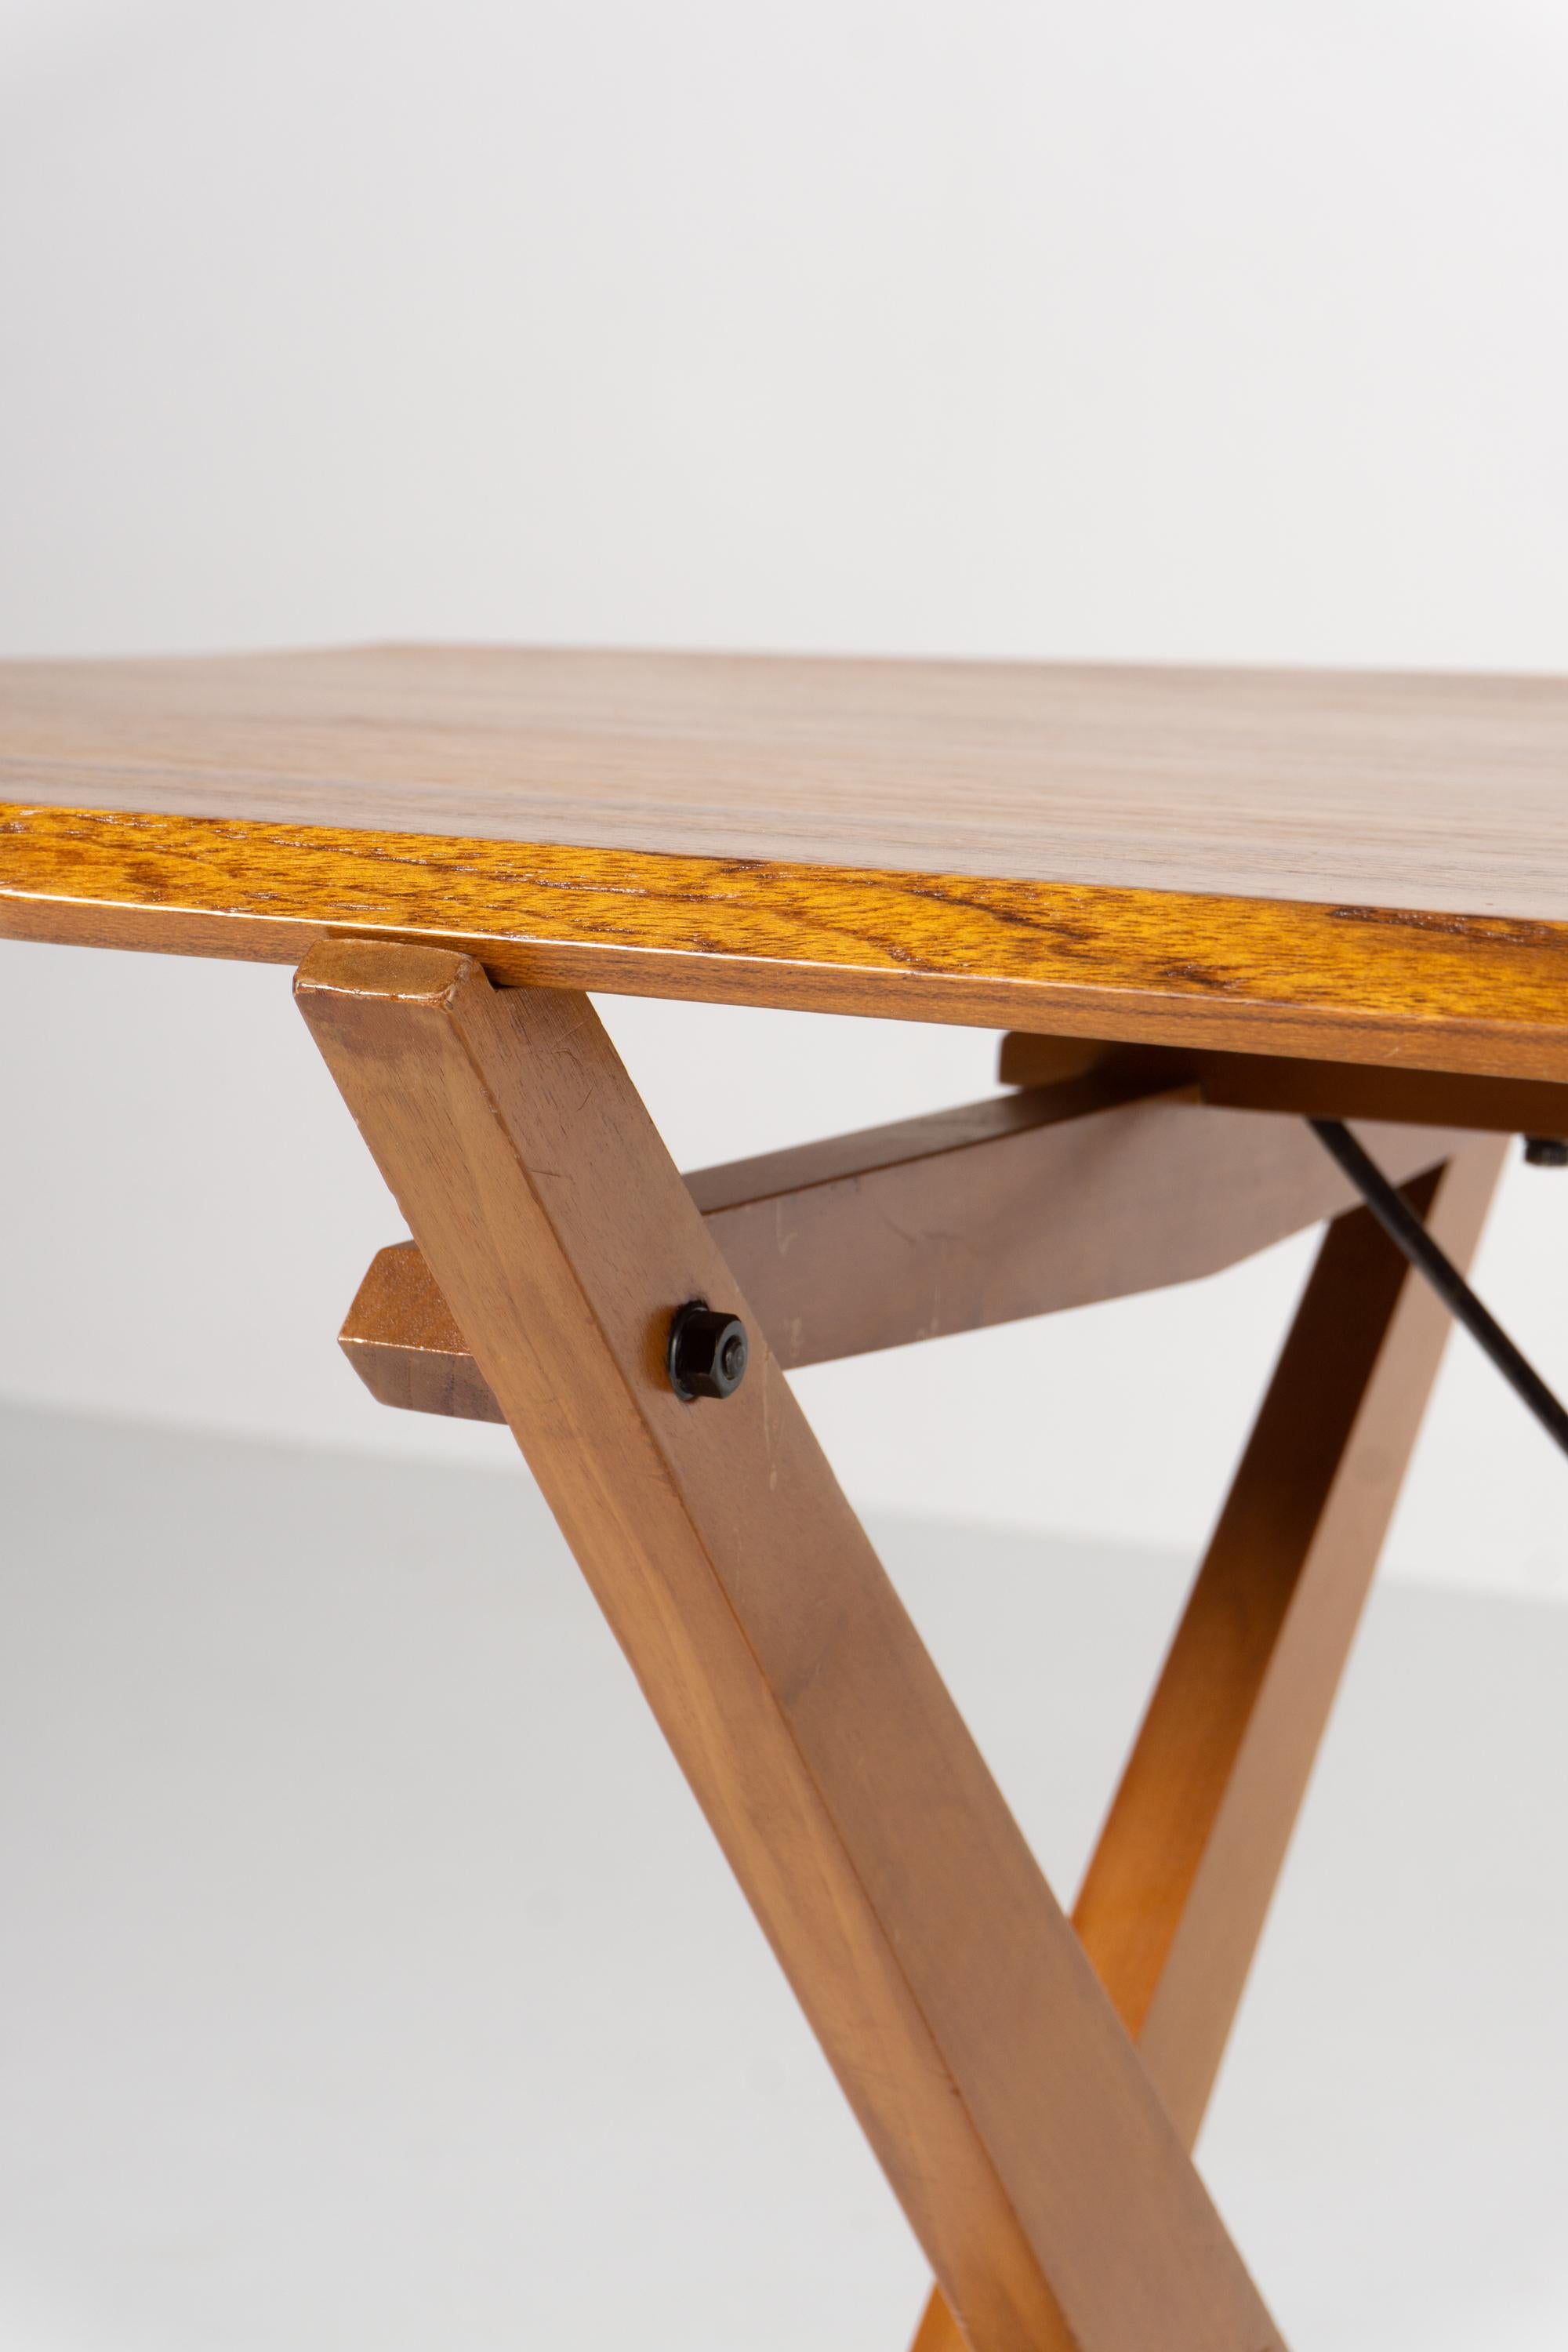 Das Besondere an diesem Tisch ist die massive Holzplatte.
Dieser anmutige Tisch des italienischen Architekten und Designers Franco Albini wurde 1951 entworfen. Das Modell mit der Bezeichnung 